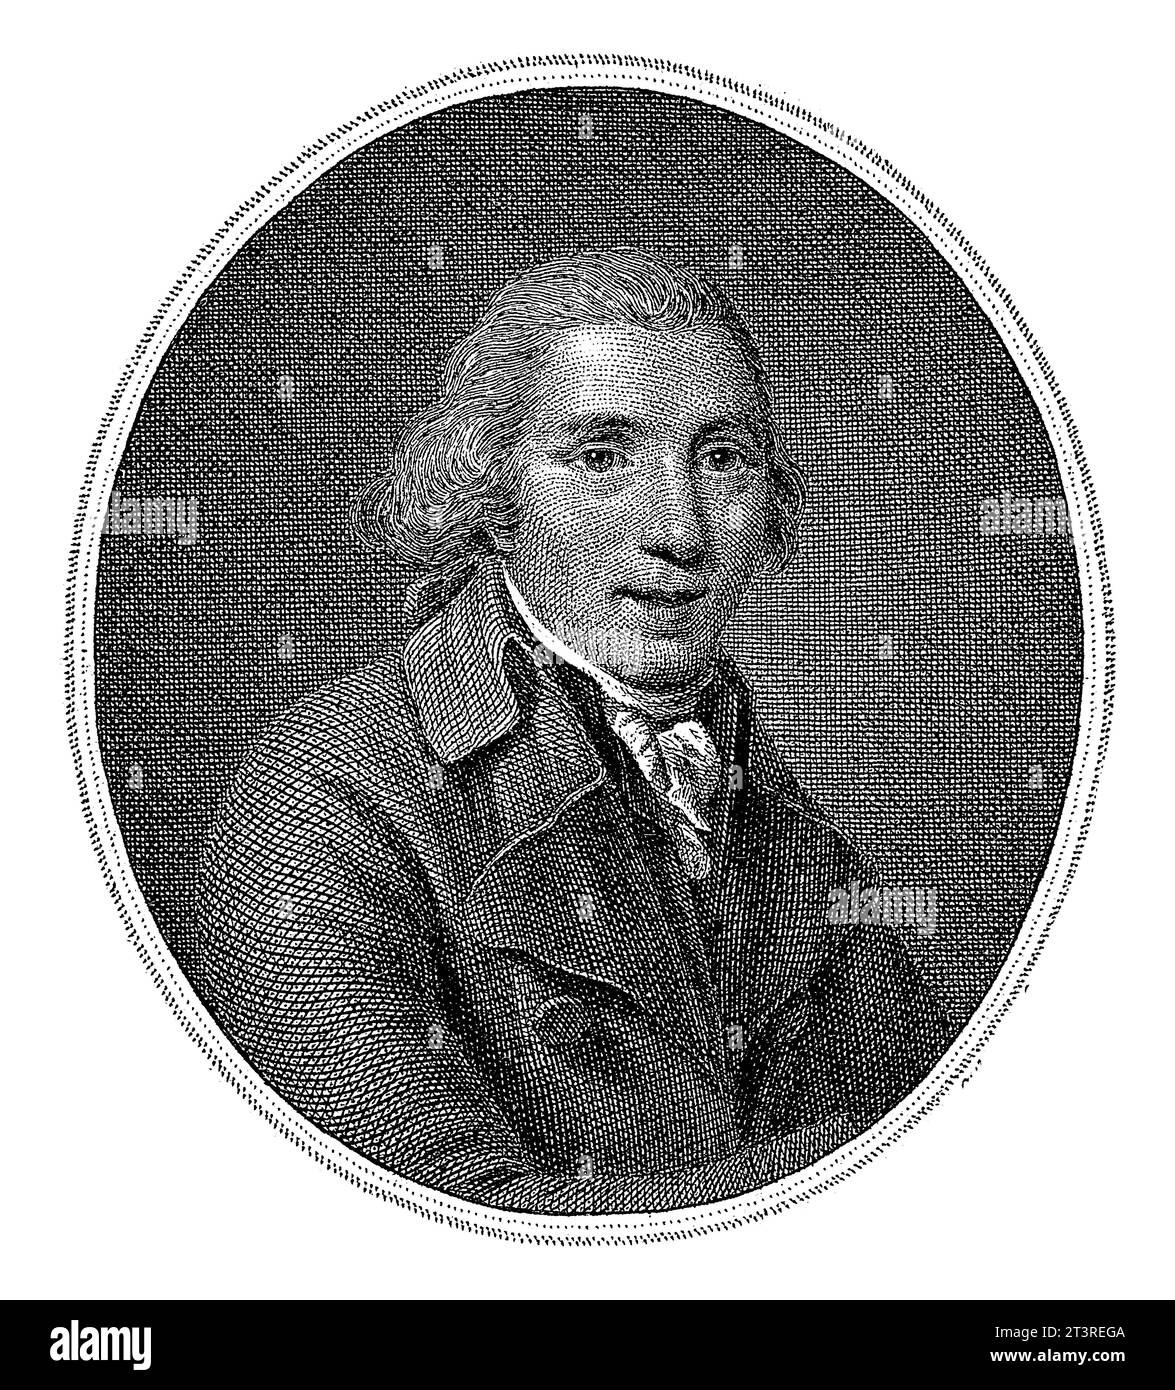 Portrait of the poet Pieter Nieuwland, Willem van Senus, after Adriaan de Lelie, 1824, vintage engraved. Stock Photo